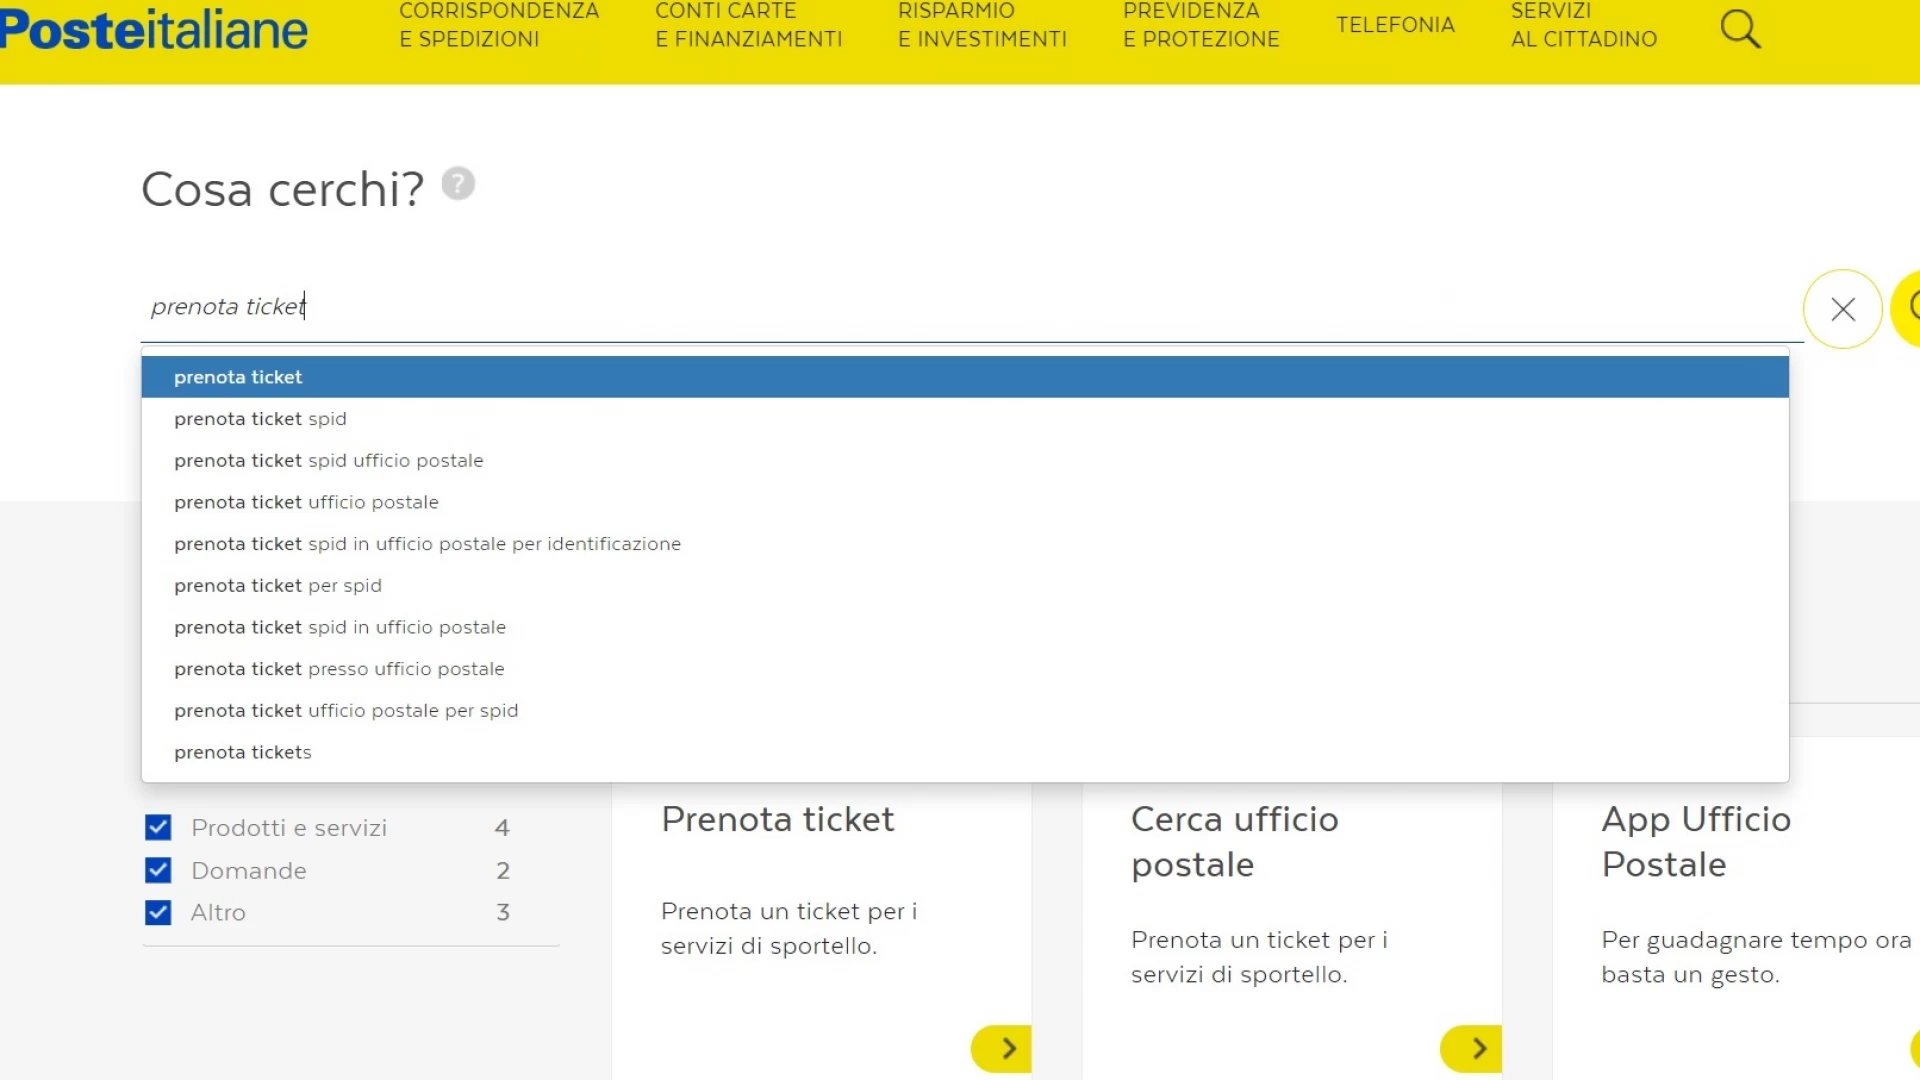 Poste Italiane, prenota ticket è il servizio online più richiesto dai molisani nel 2021.